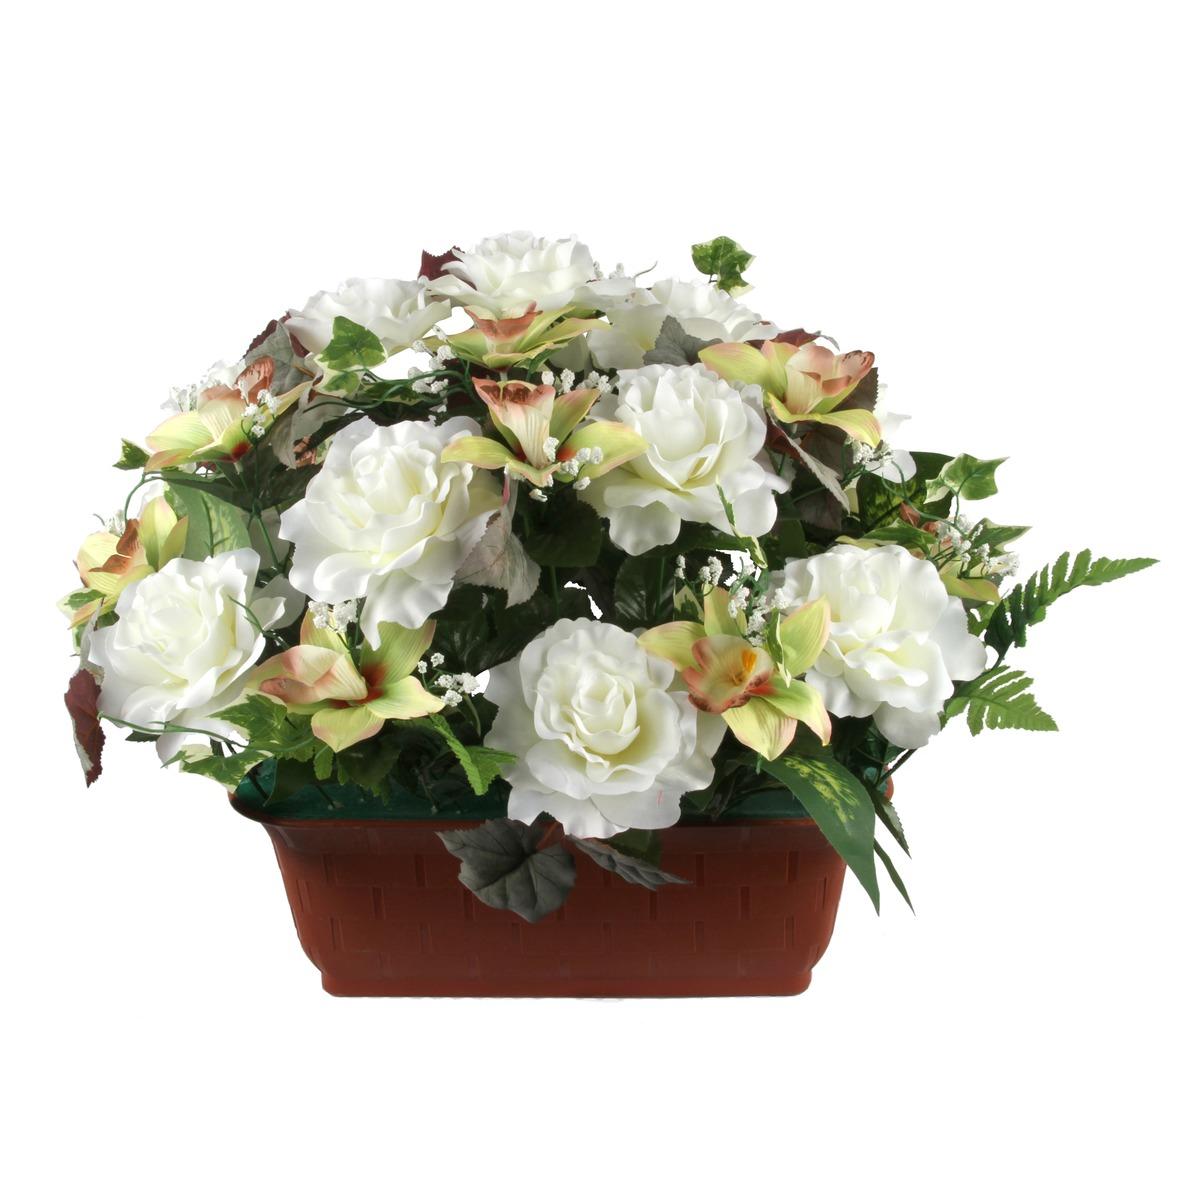 Jardinière de roses + orchidées + feuilles - Hauteur 46 cm - Différents modèles